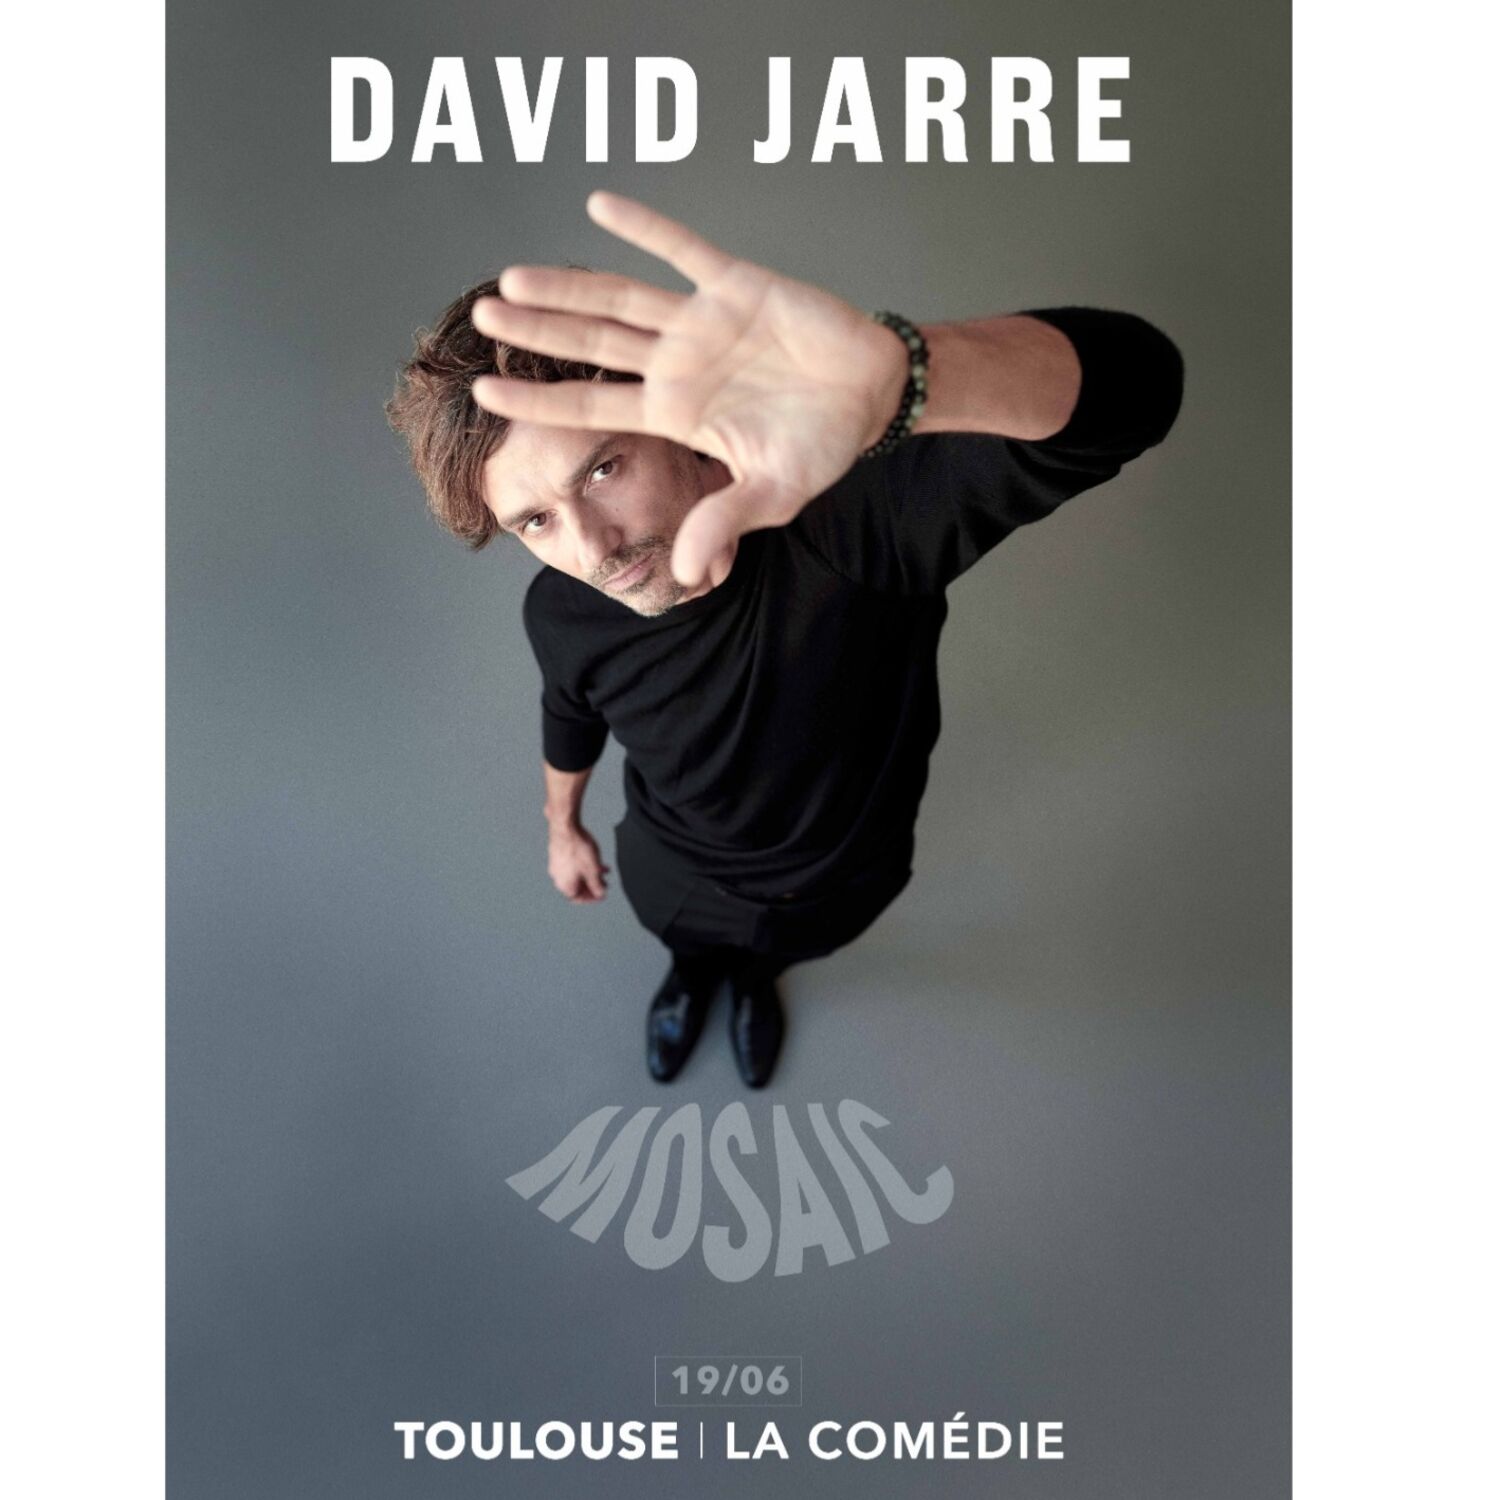 DAVID JARRE à la Comédie de Toulouse- sur 100%